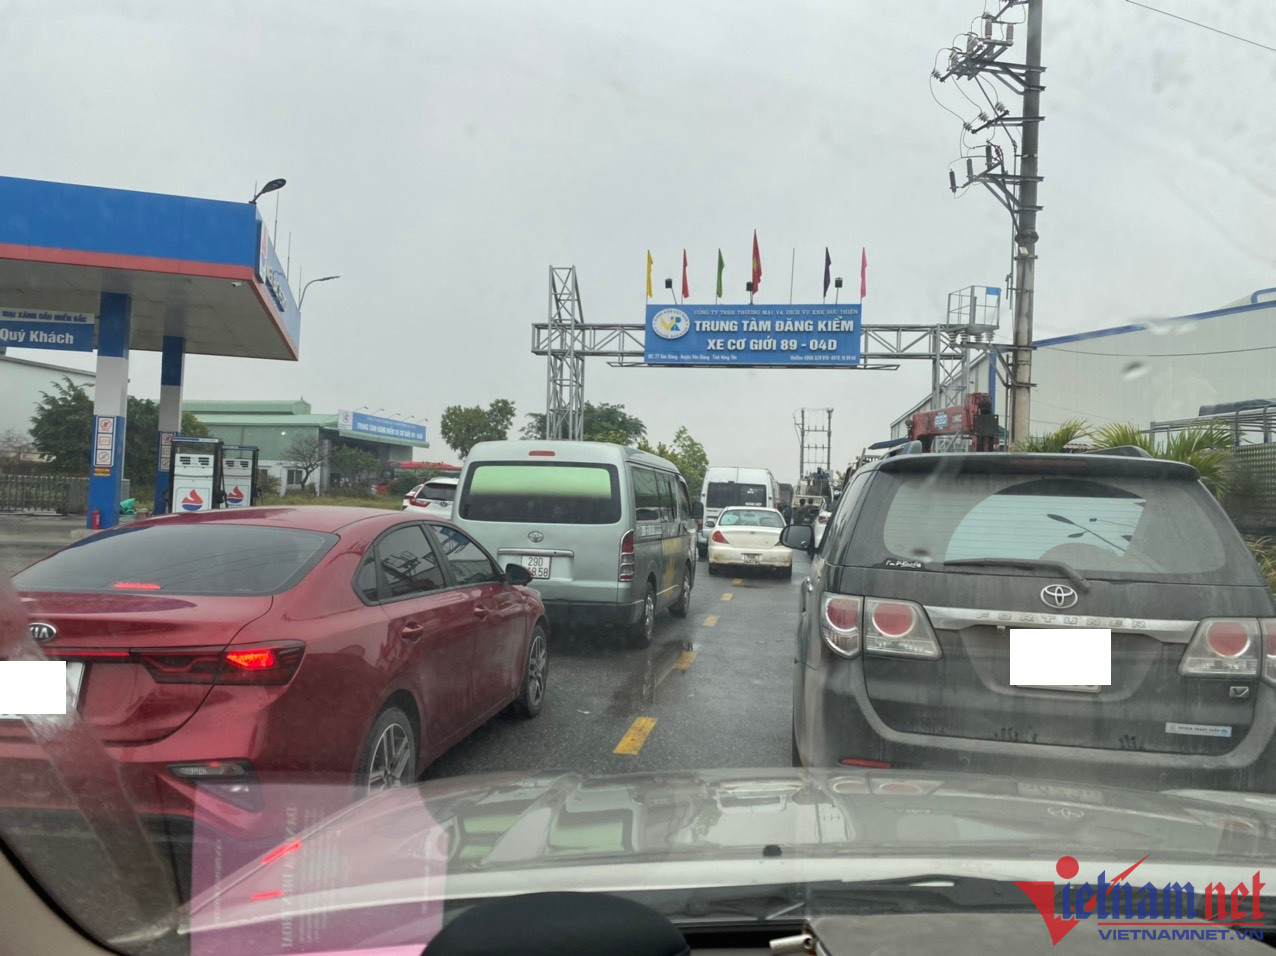 Lái xe qua 5 trạm ở 3 tỉnh thành để kiểm định ô tô